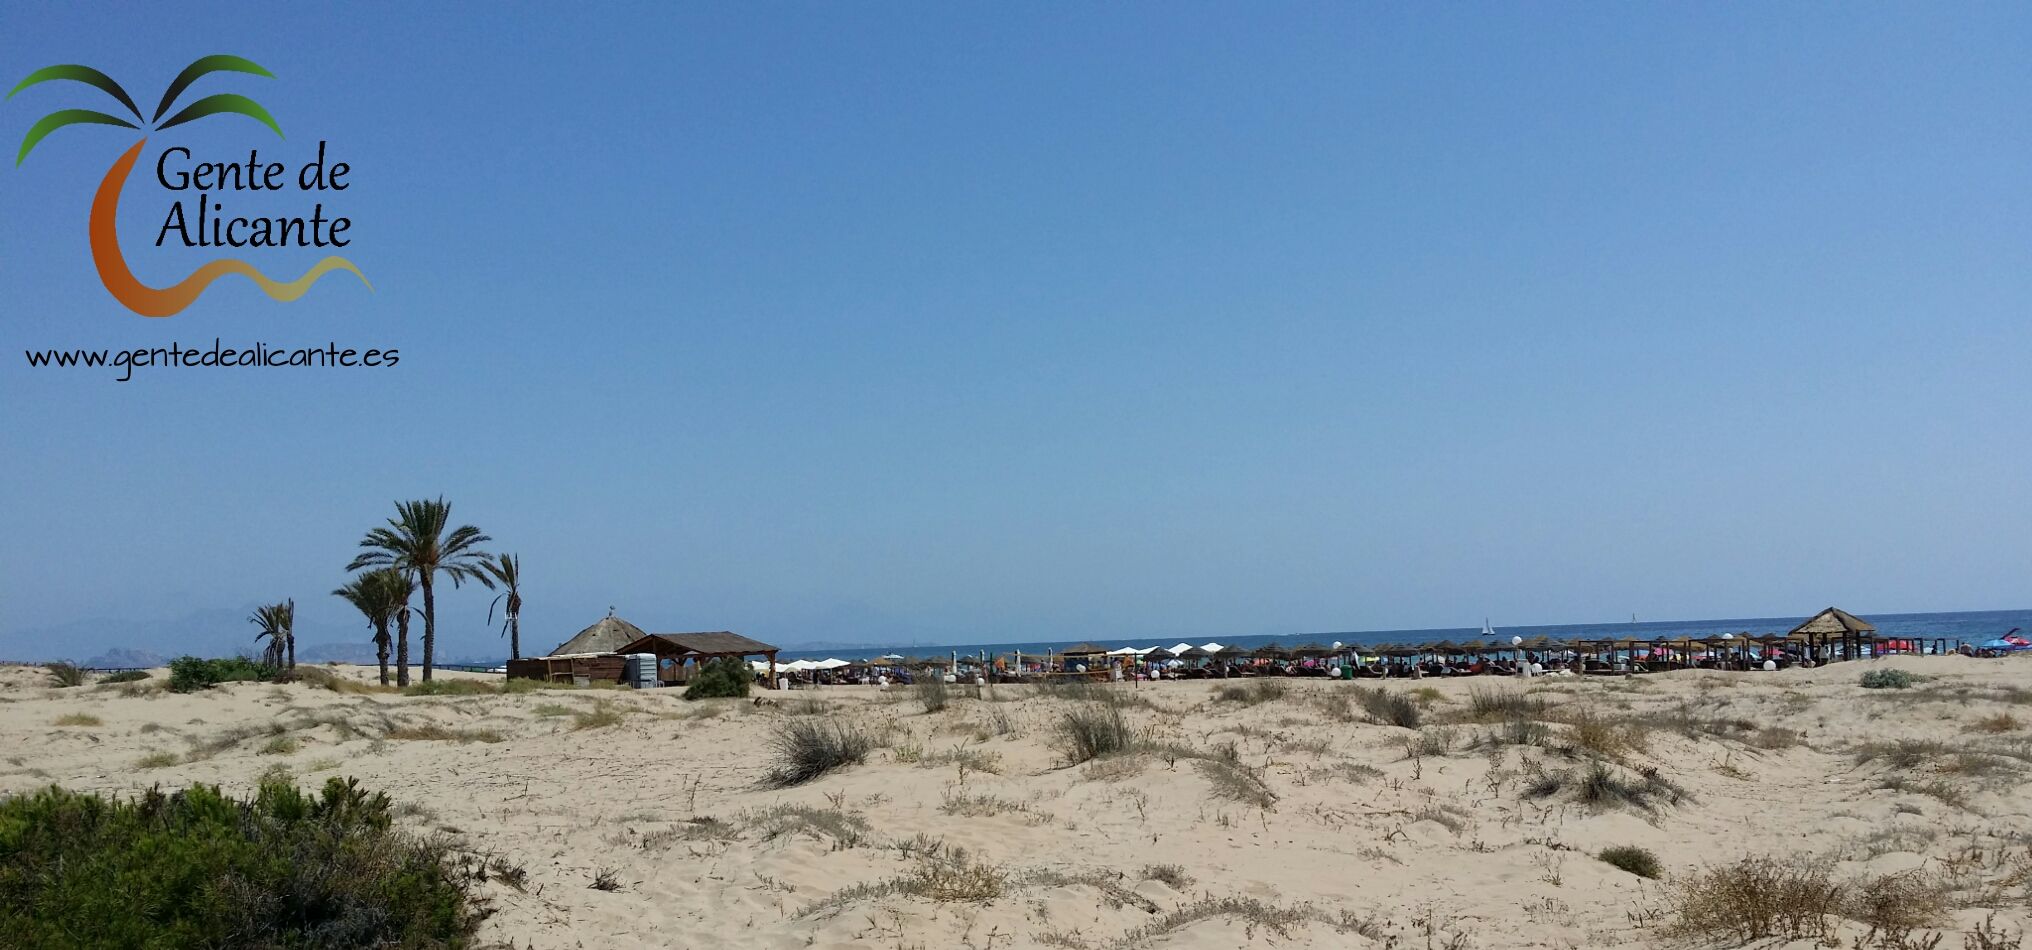 Playa-arenales-del-sol-elche-gentedealicante.es